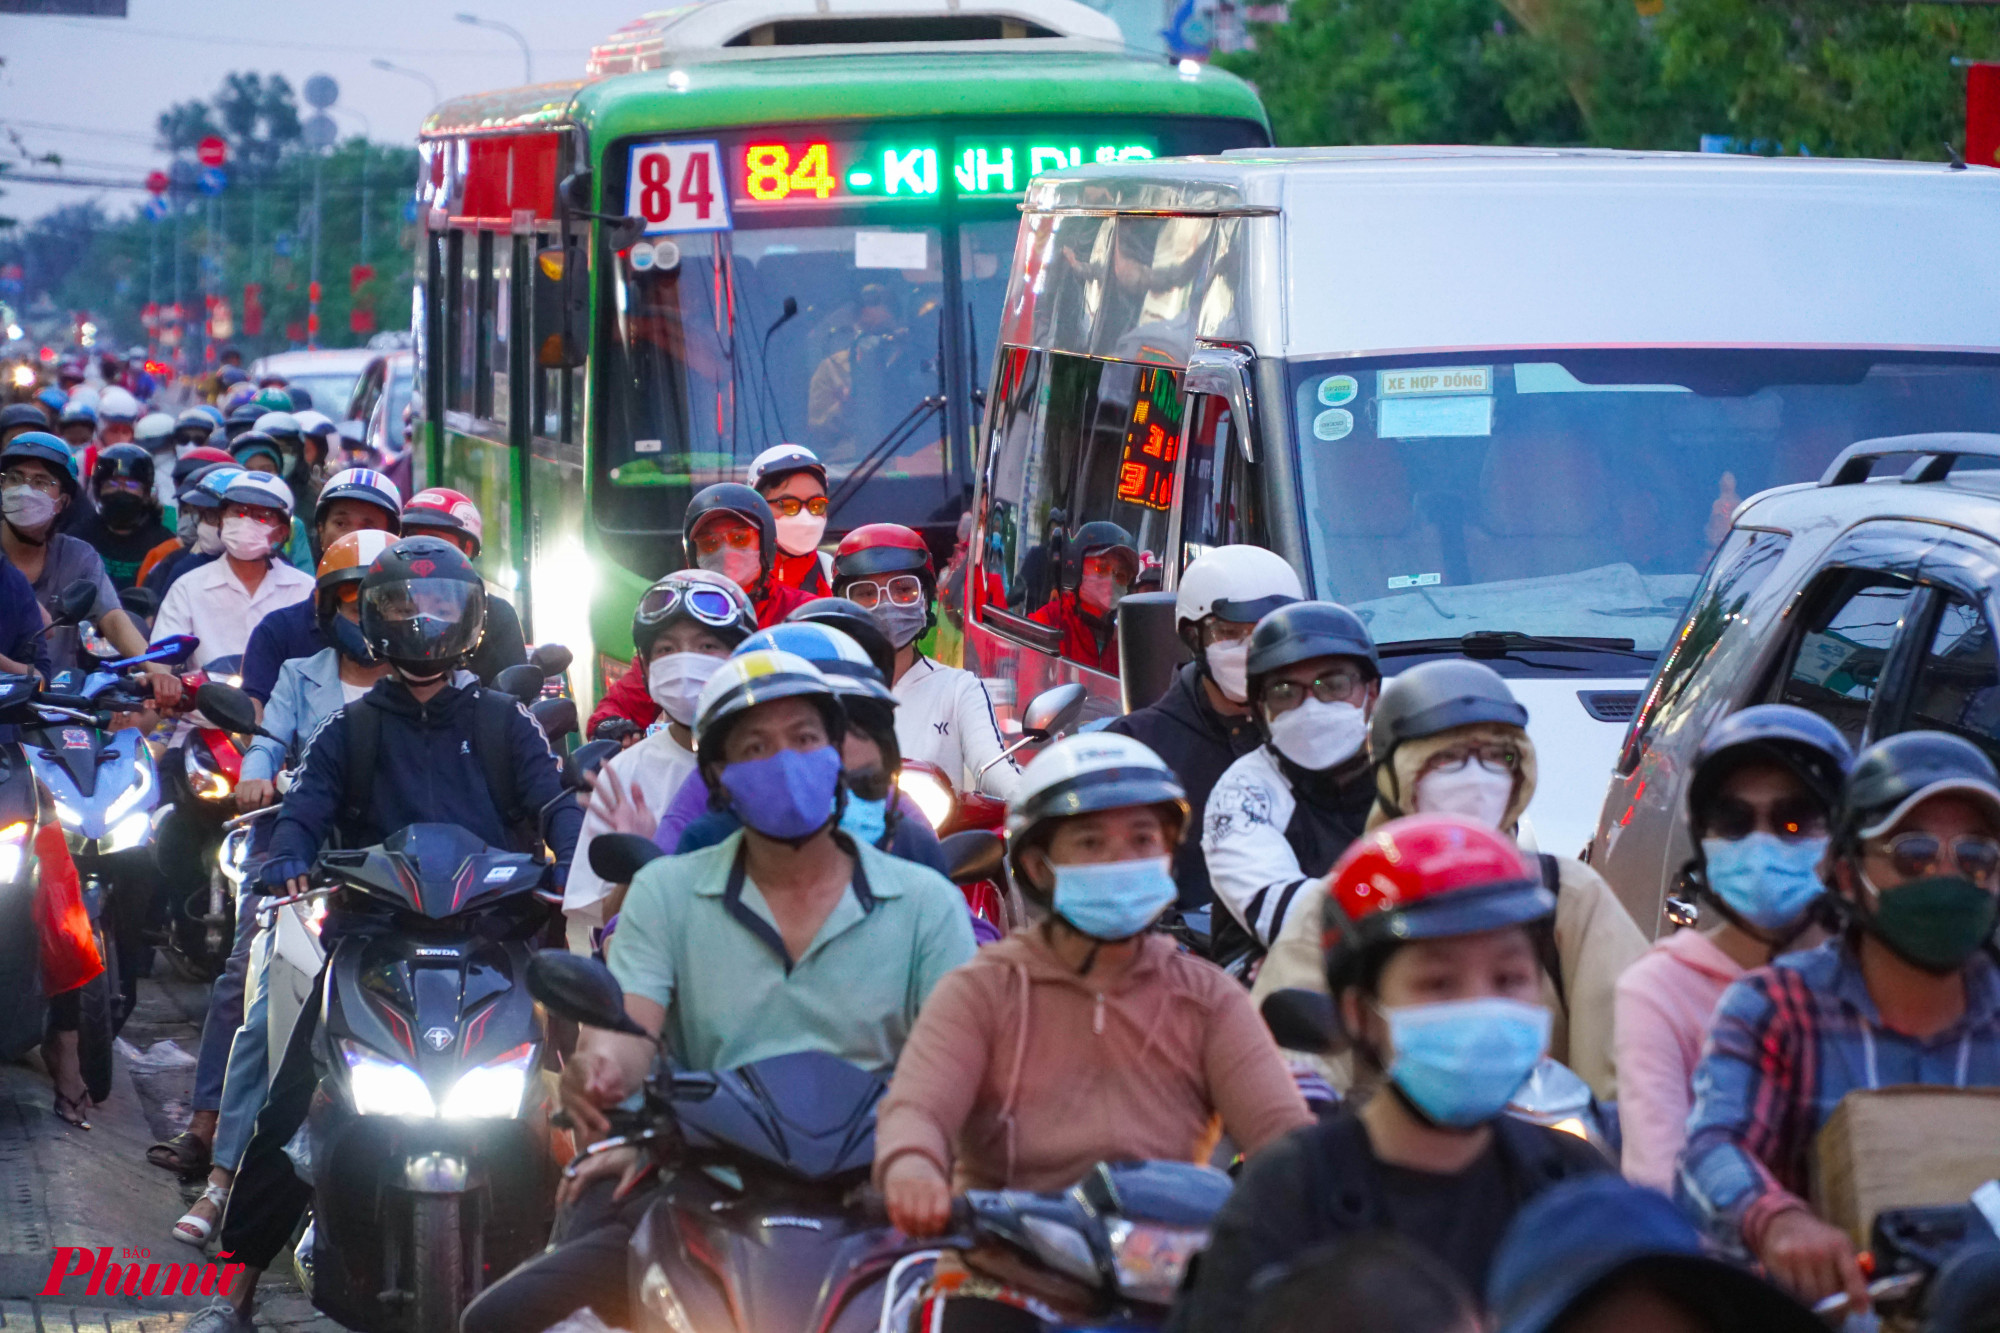 Đường nhánh Nguyễn Hữu Trí cũng ghi nhận tình trạng xe đông tại các nút giao, xuyên suốt tuyến đường thông thoáng